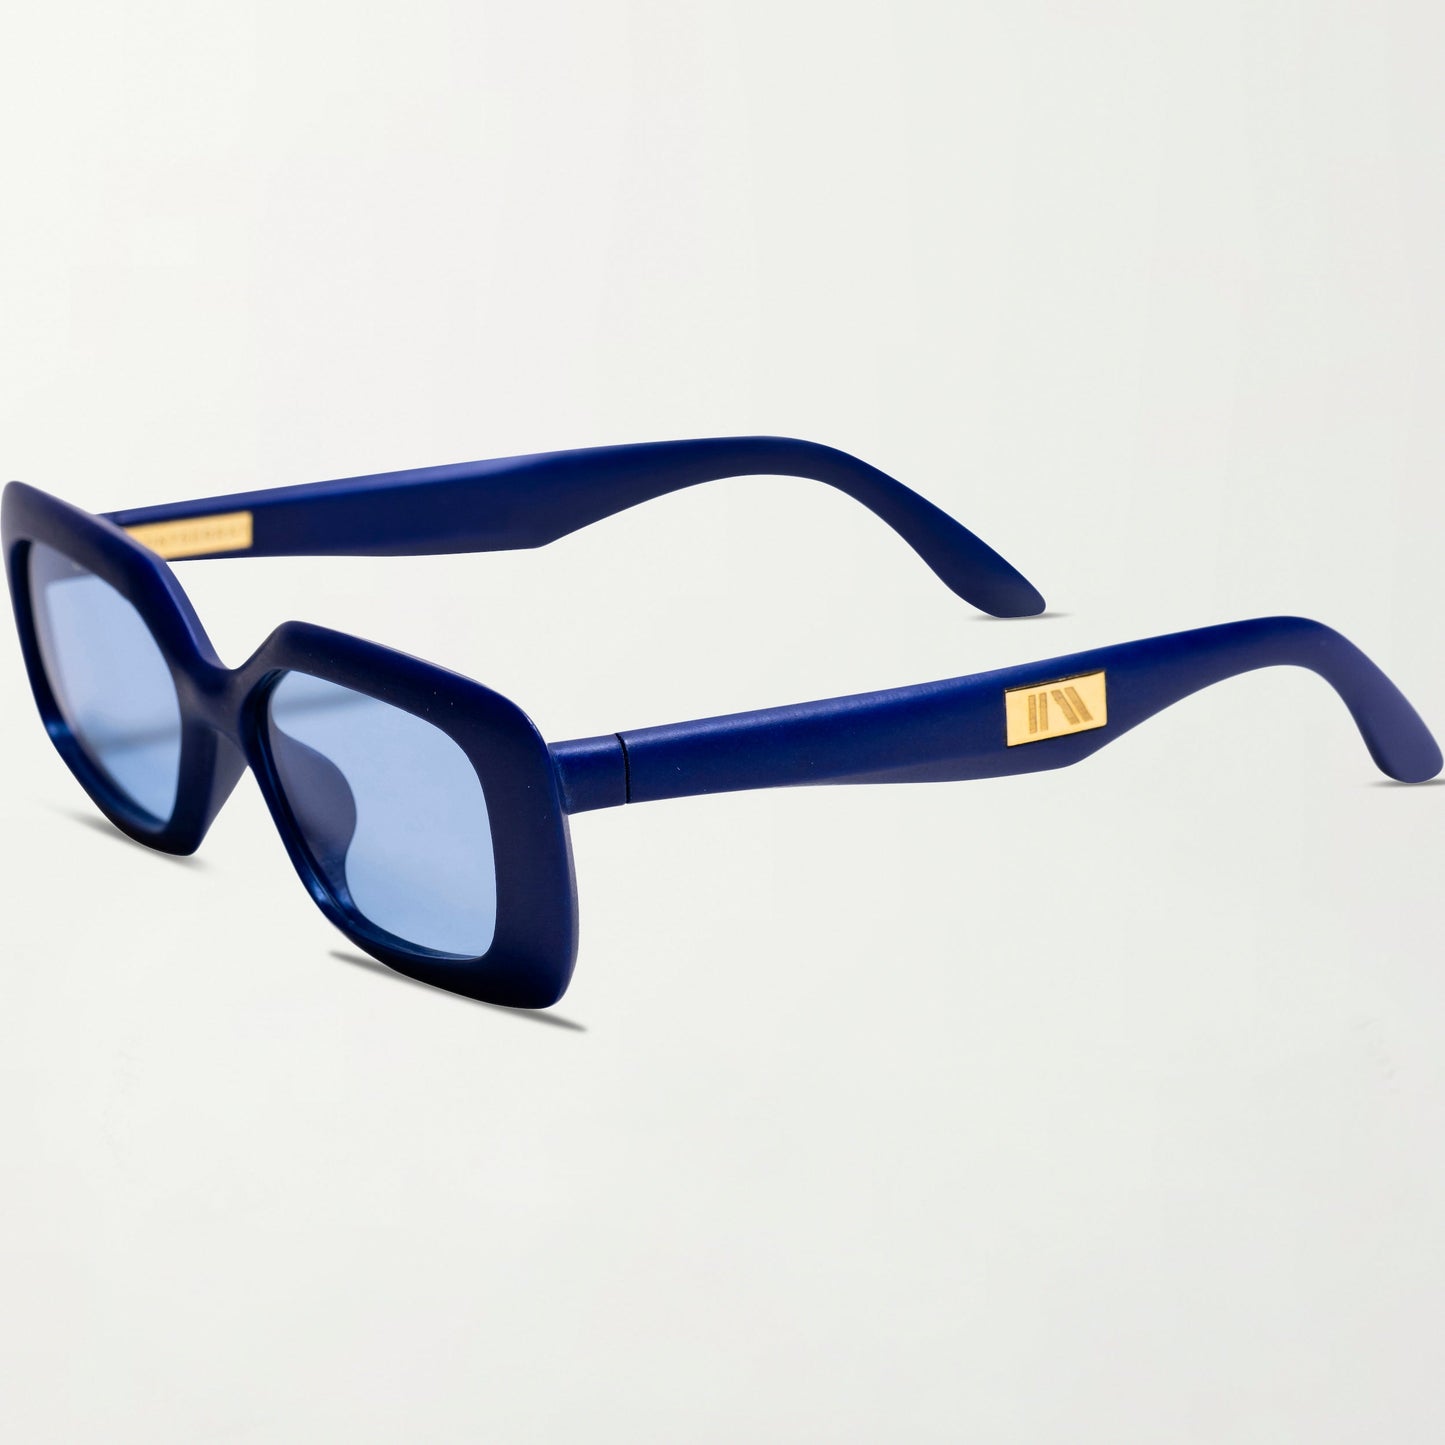 The Paros Sunglasses in Mediterranean Blue